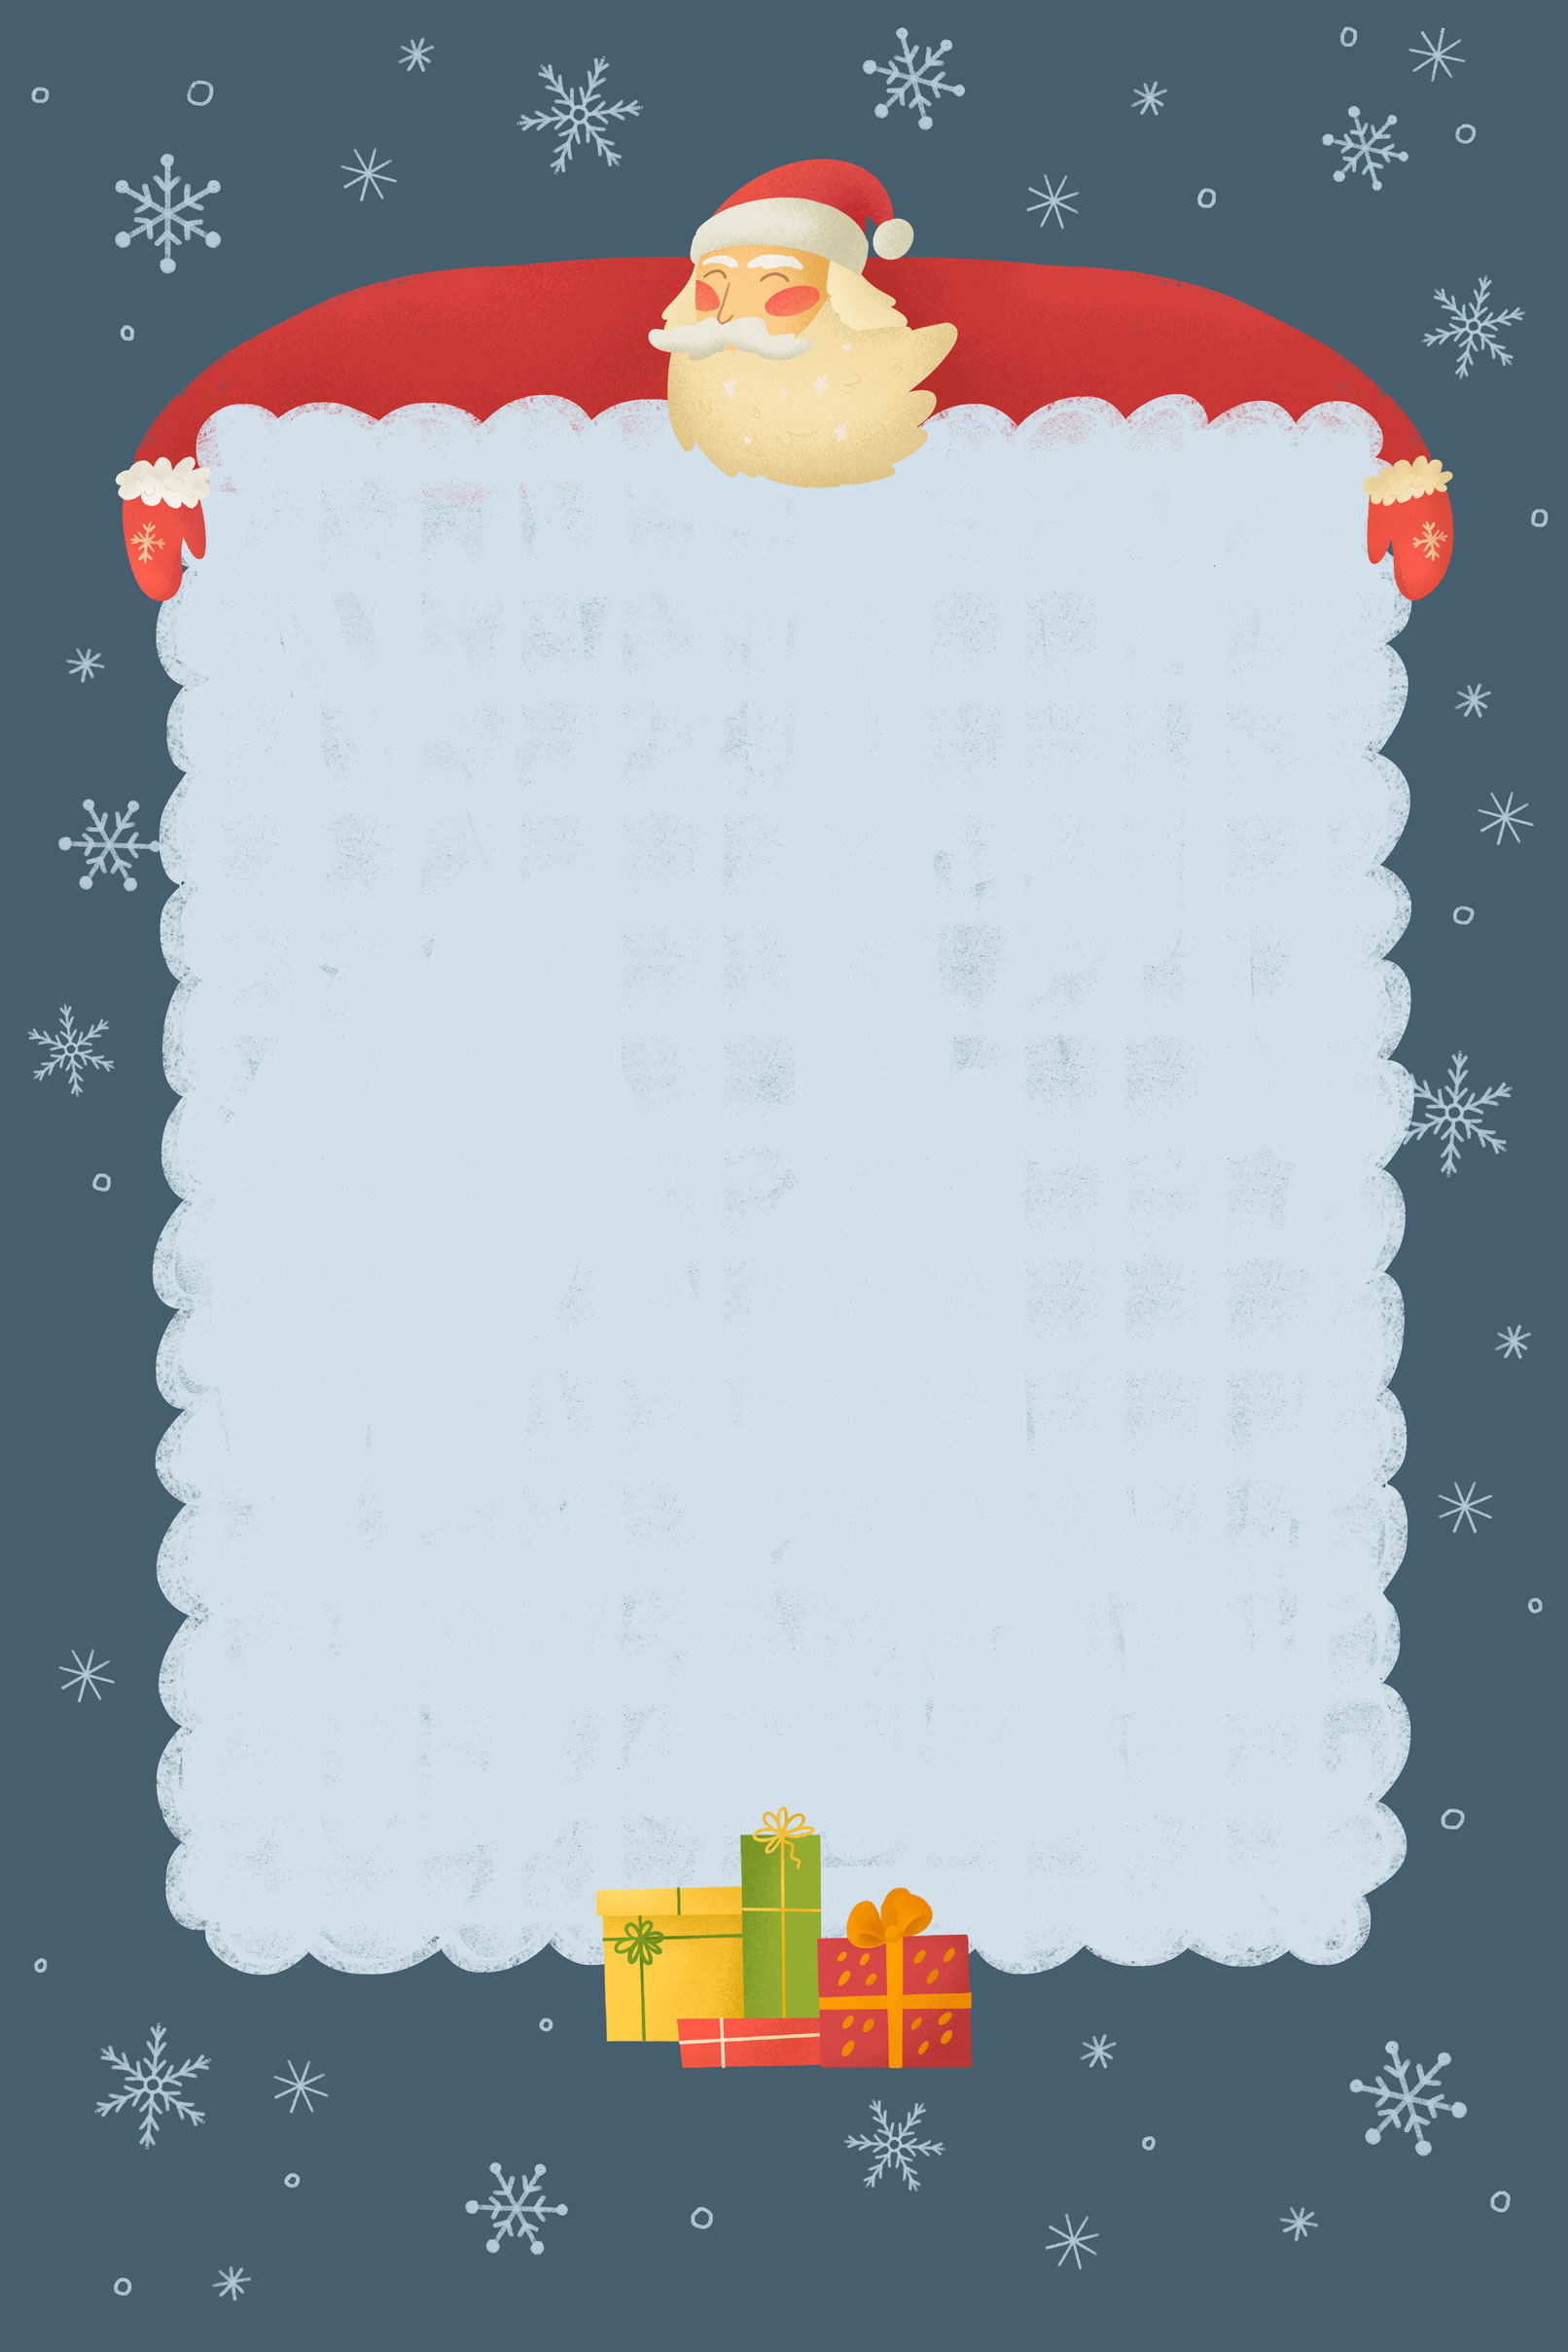 Hintergründe für Weihnachtsgrußkarten: blaues Design mit Weihnachtsmann und Schneeflocken